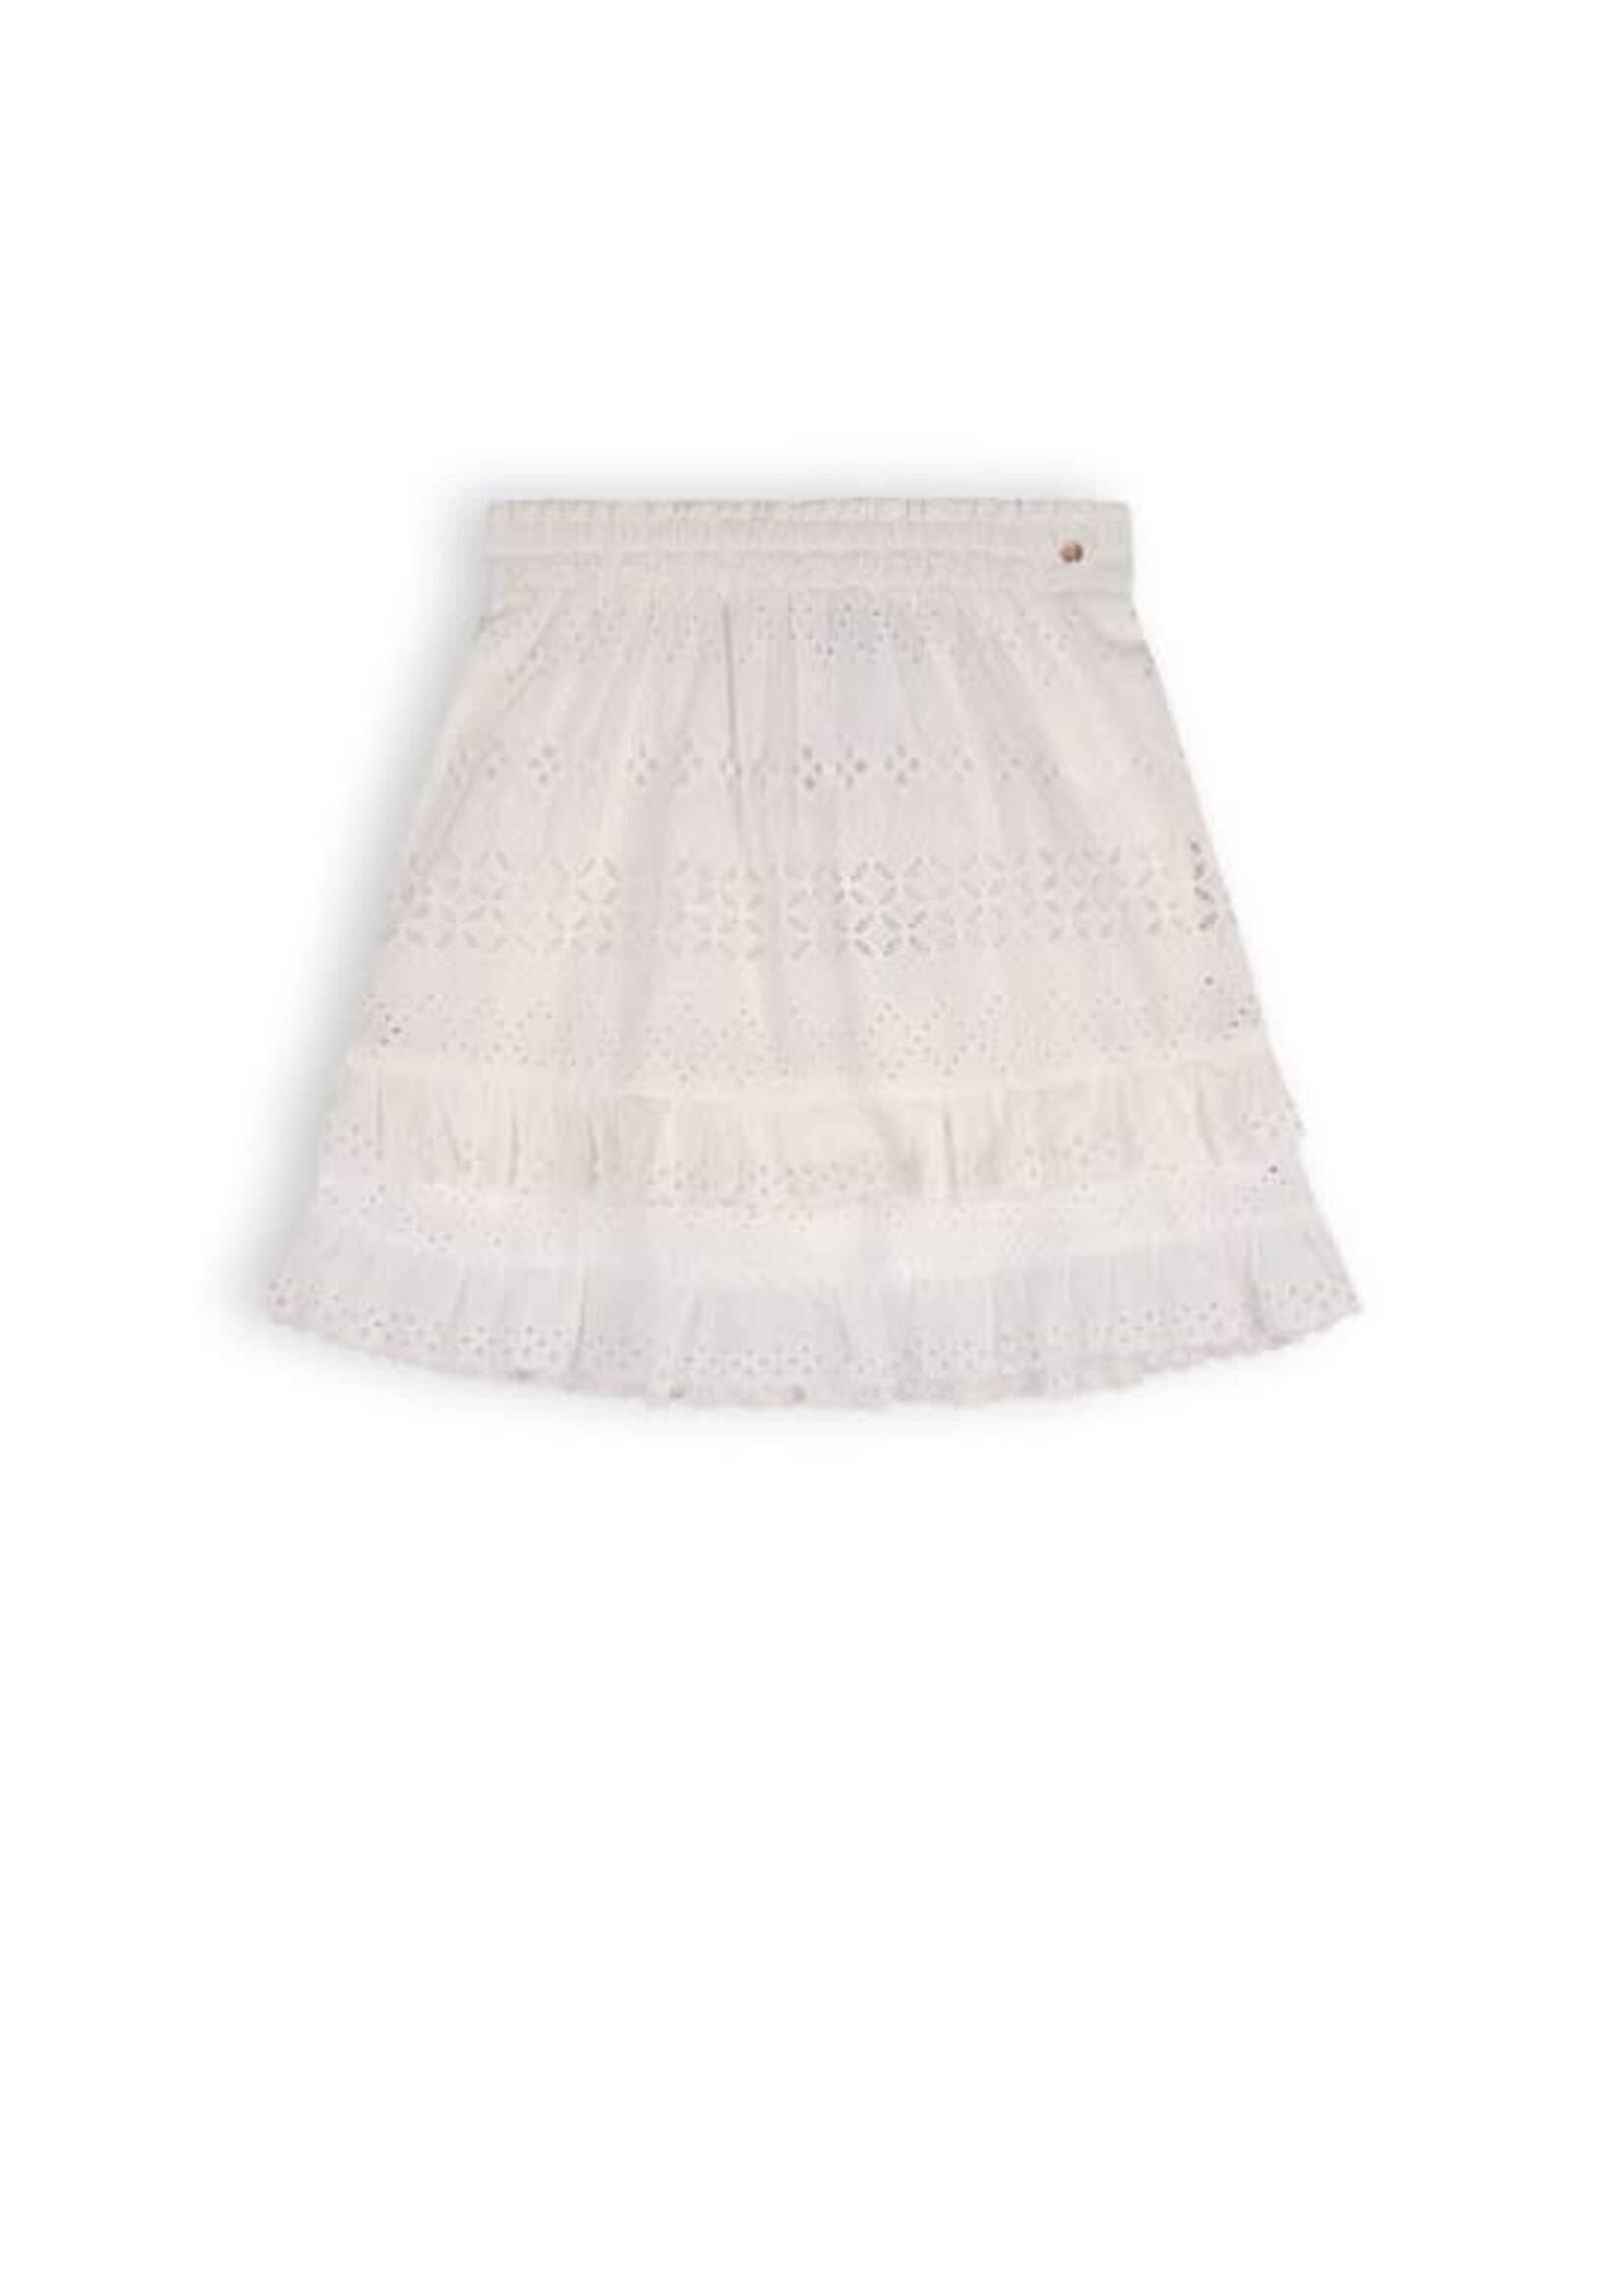 Nobell Nobell NoBell' Niuri girls embroidered cotton skirt Q312-3702 Snow White